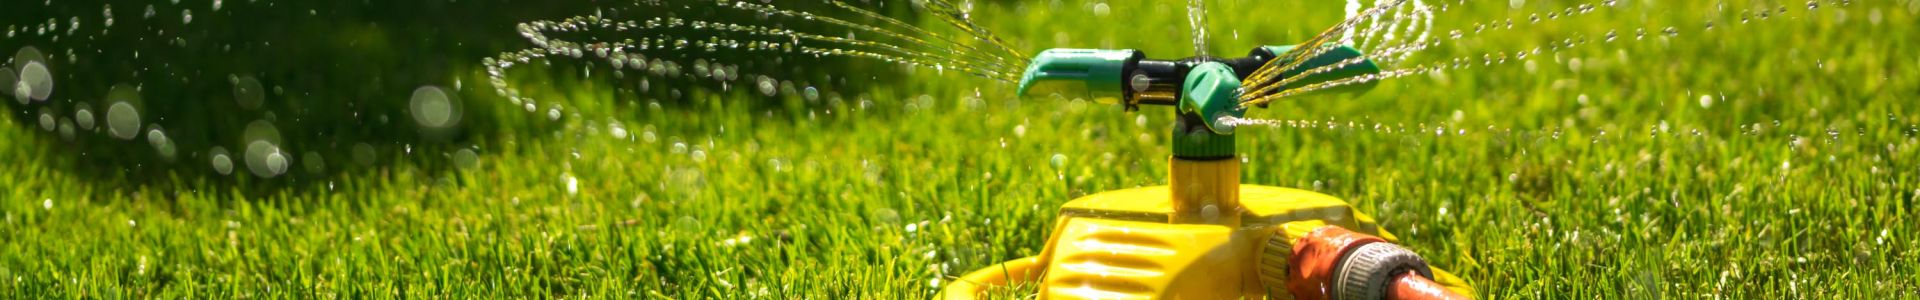 Brauchwasser & Gartenbewässerung